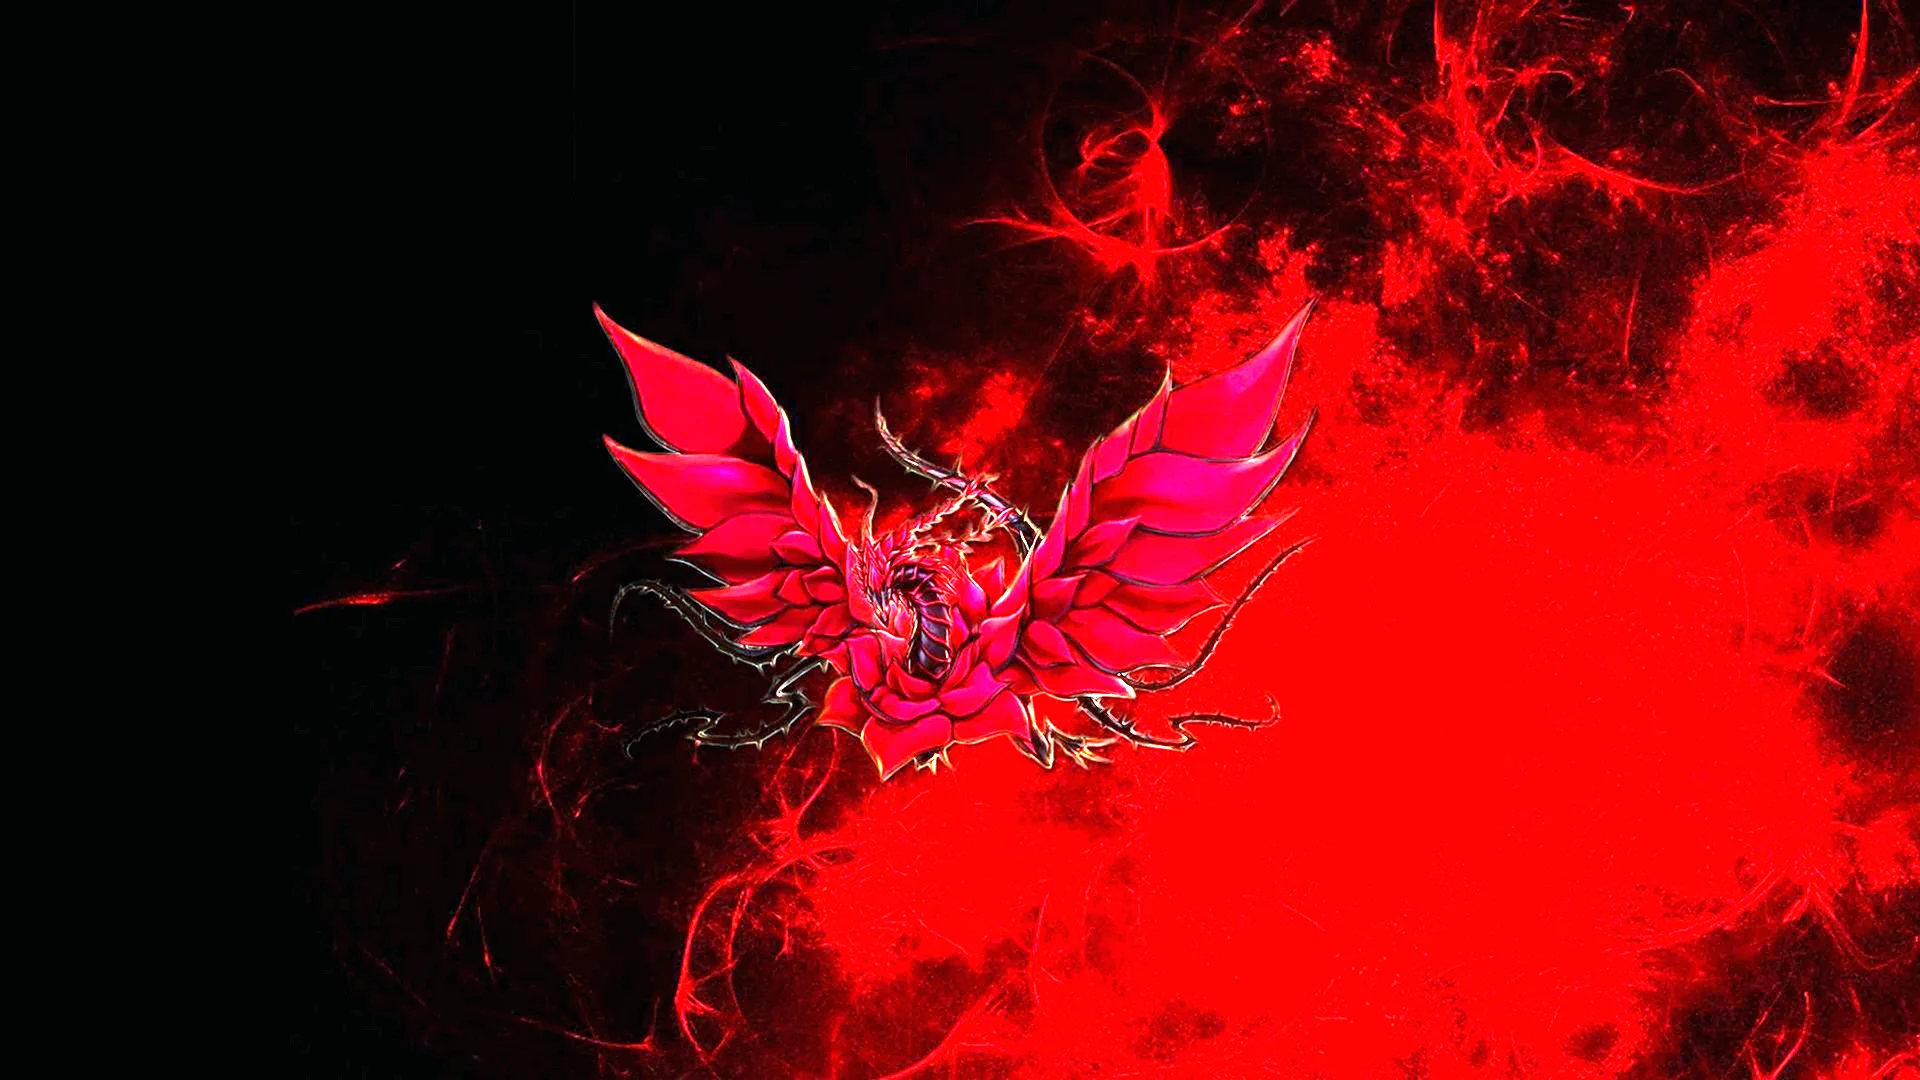 MSI Red Dragon